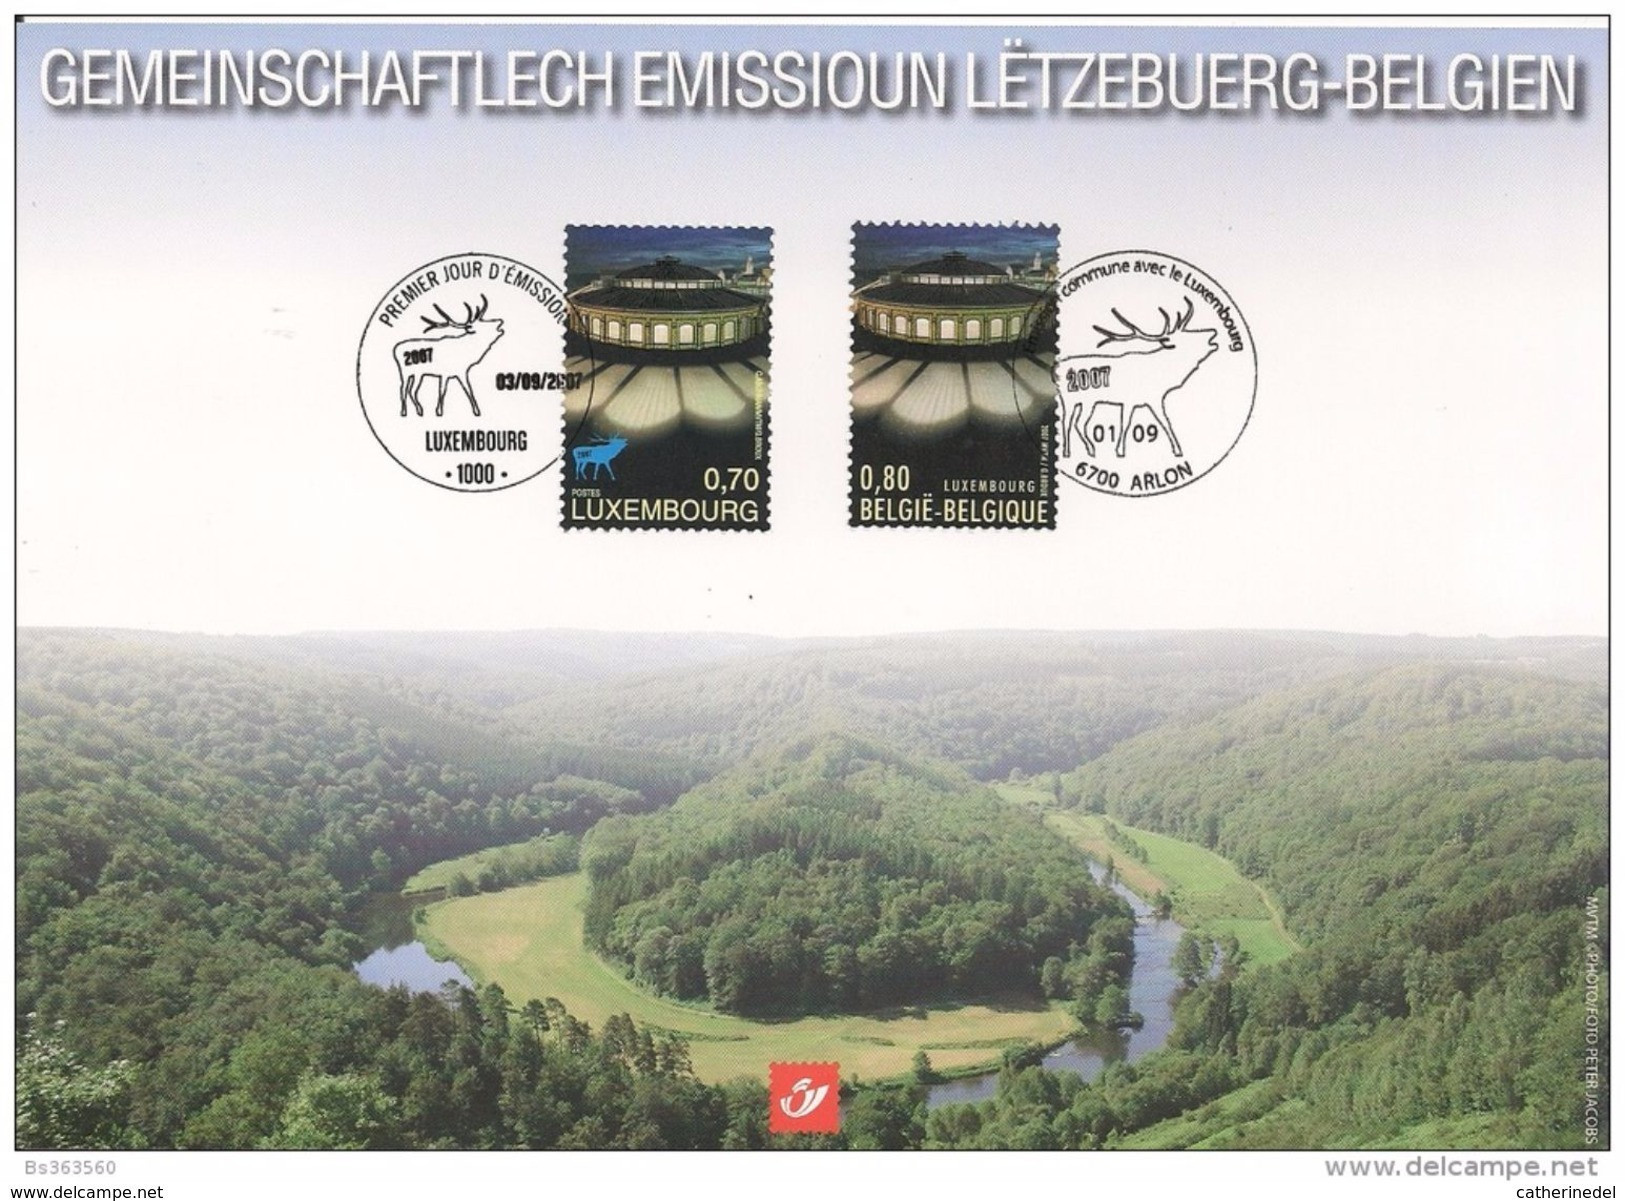 Année 2007 : Carte Souvenir 3676HK - Luxembourg Capitales Européenne De La Culture 2007 - Cartoline Commemorative - Emissioni Congiunte [HK]